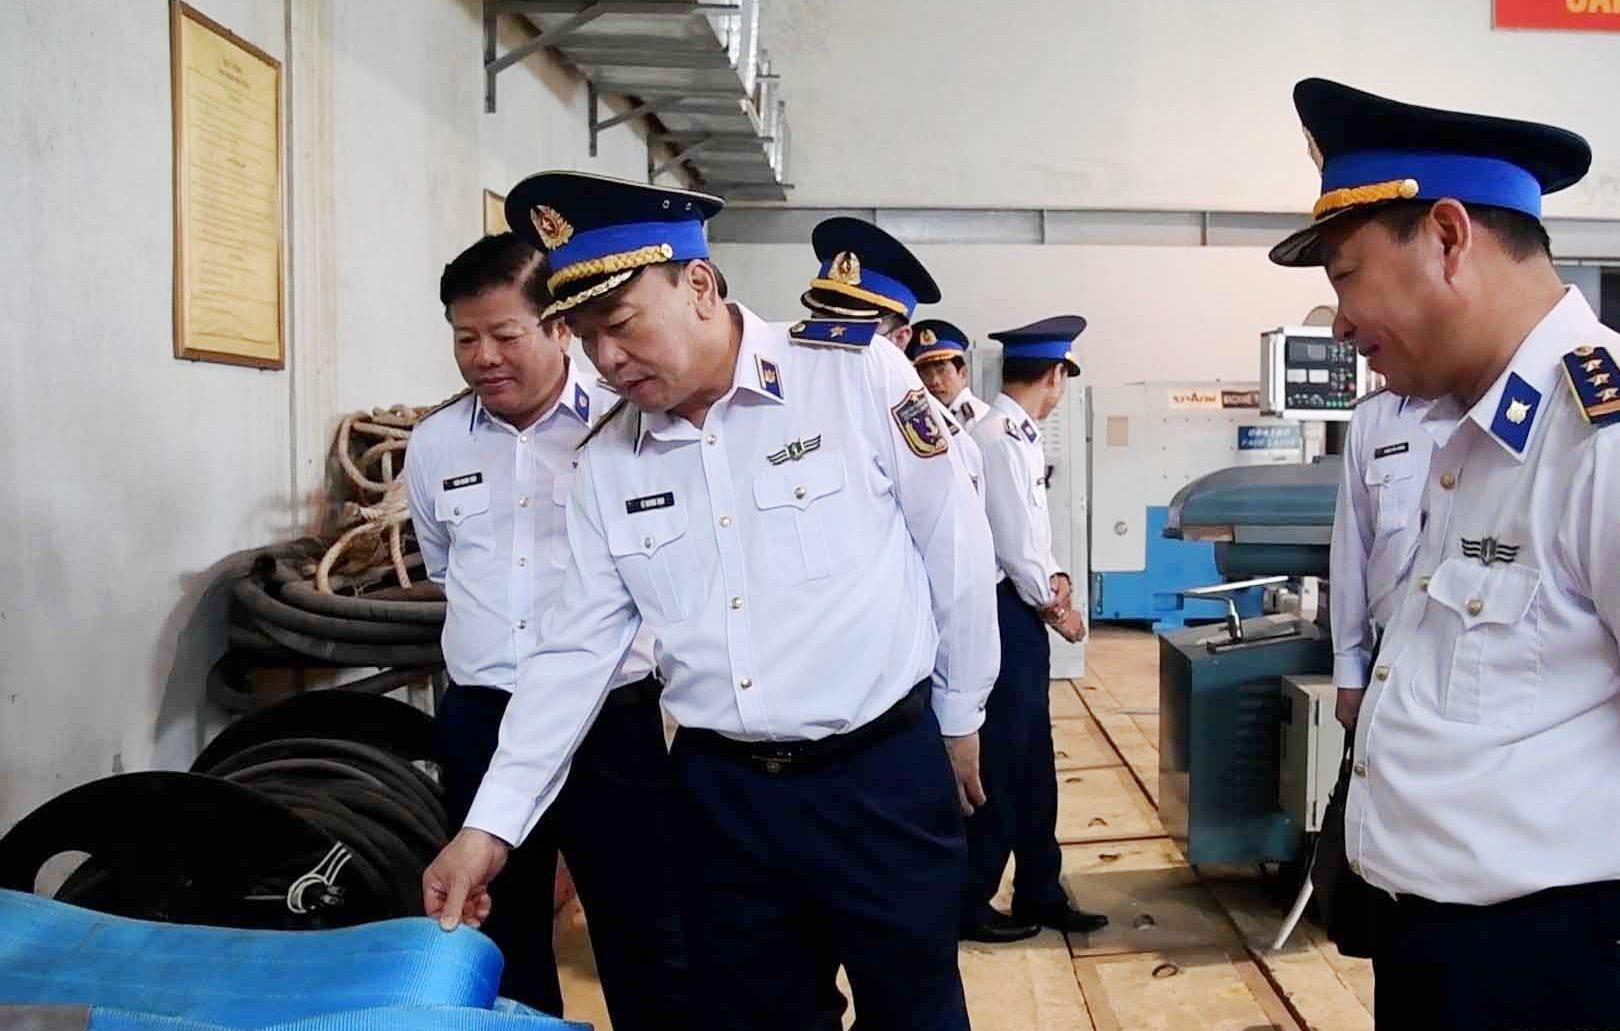 Thiếu tướng Lê Quang Đạo - Tư lệnh Cảnh sát biển Việt Nam kiểm tra hoạt động của Trạm sửa chữa tổng hợp thuộc Phòng Kỹ thuật (Hải đoàn 21). Ảnh: N.T